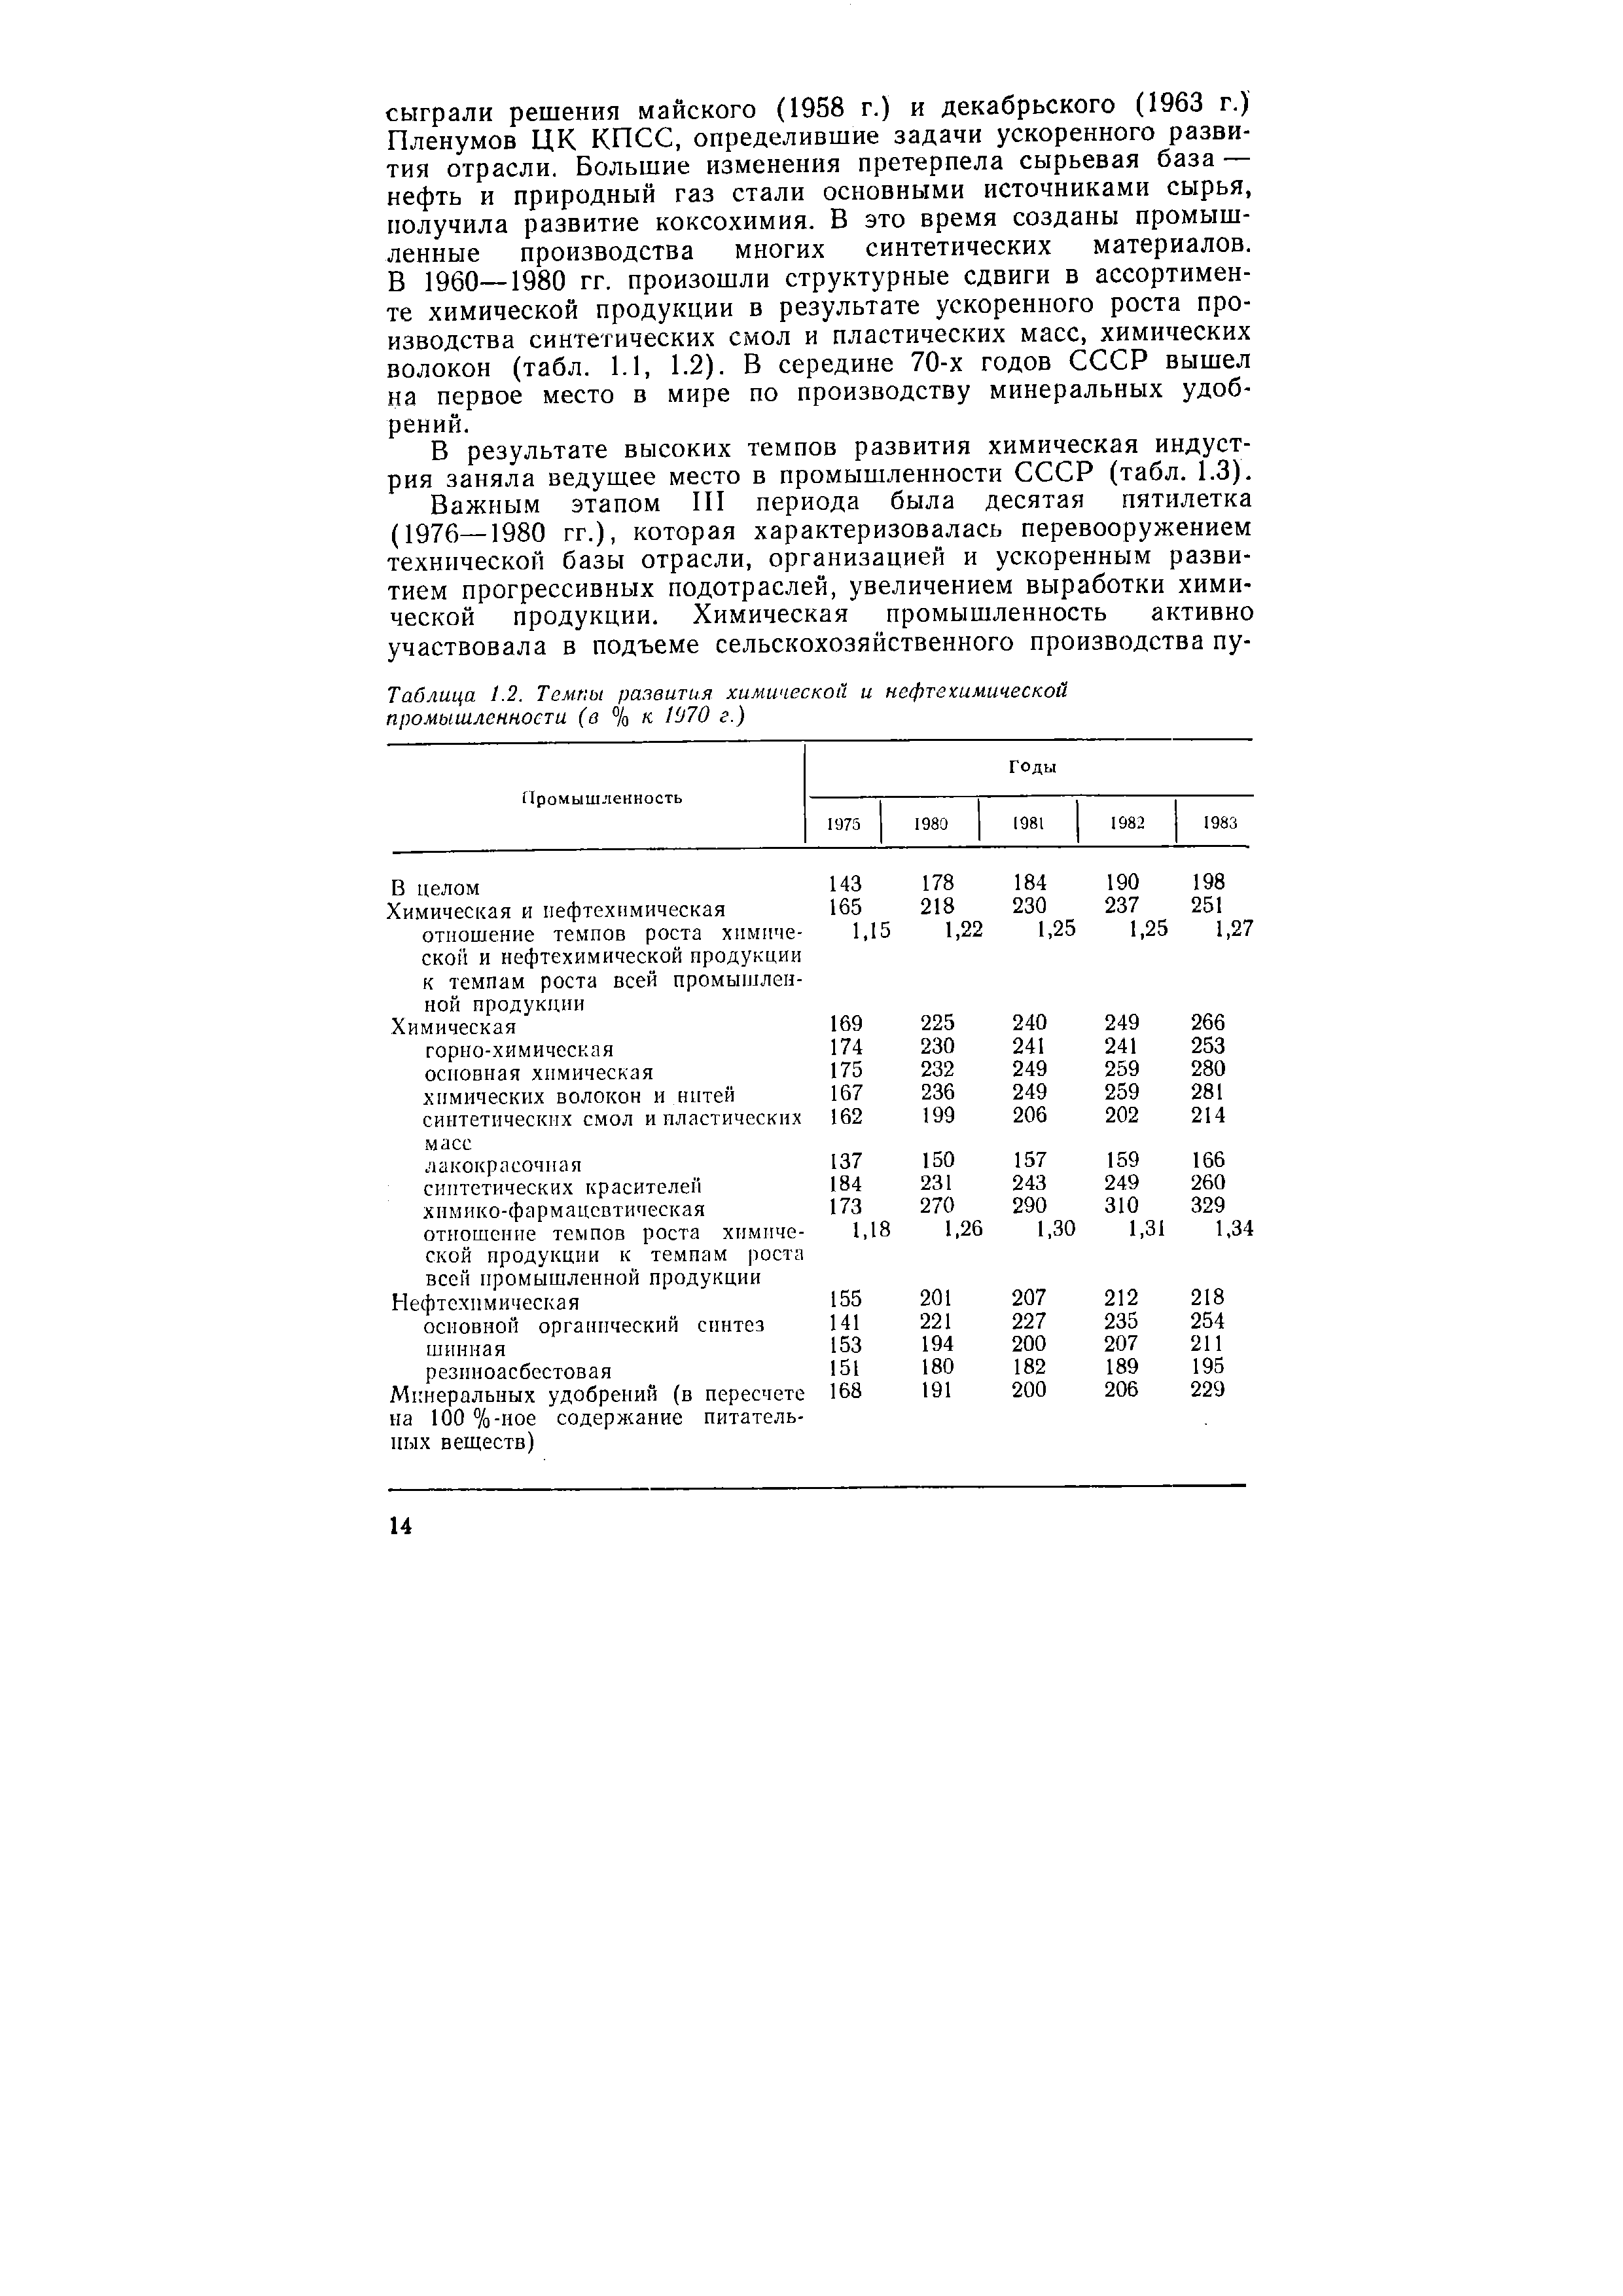 Таблица 1.2. Темпы развития химической и нефтехимической промышленности (в % к 1970 г.)
